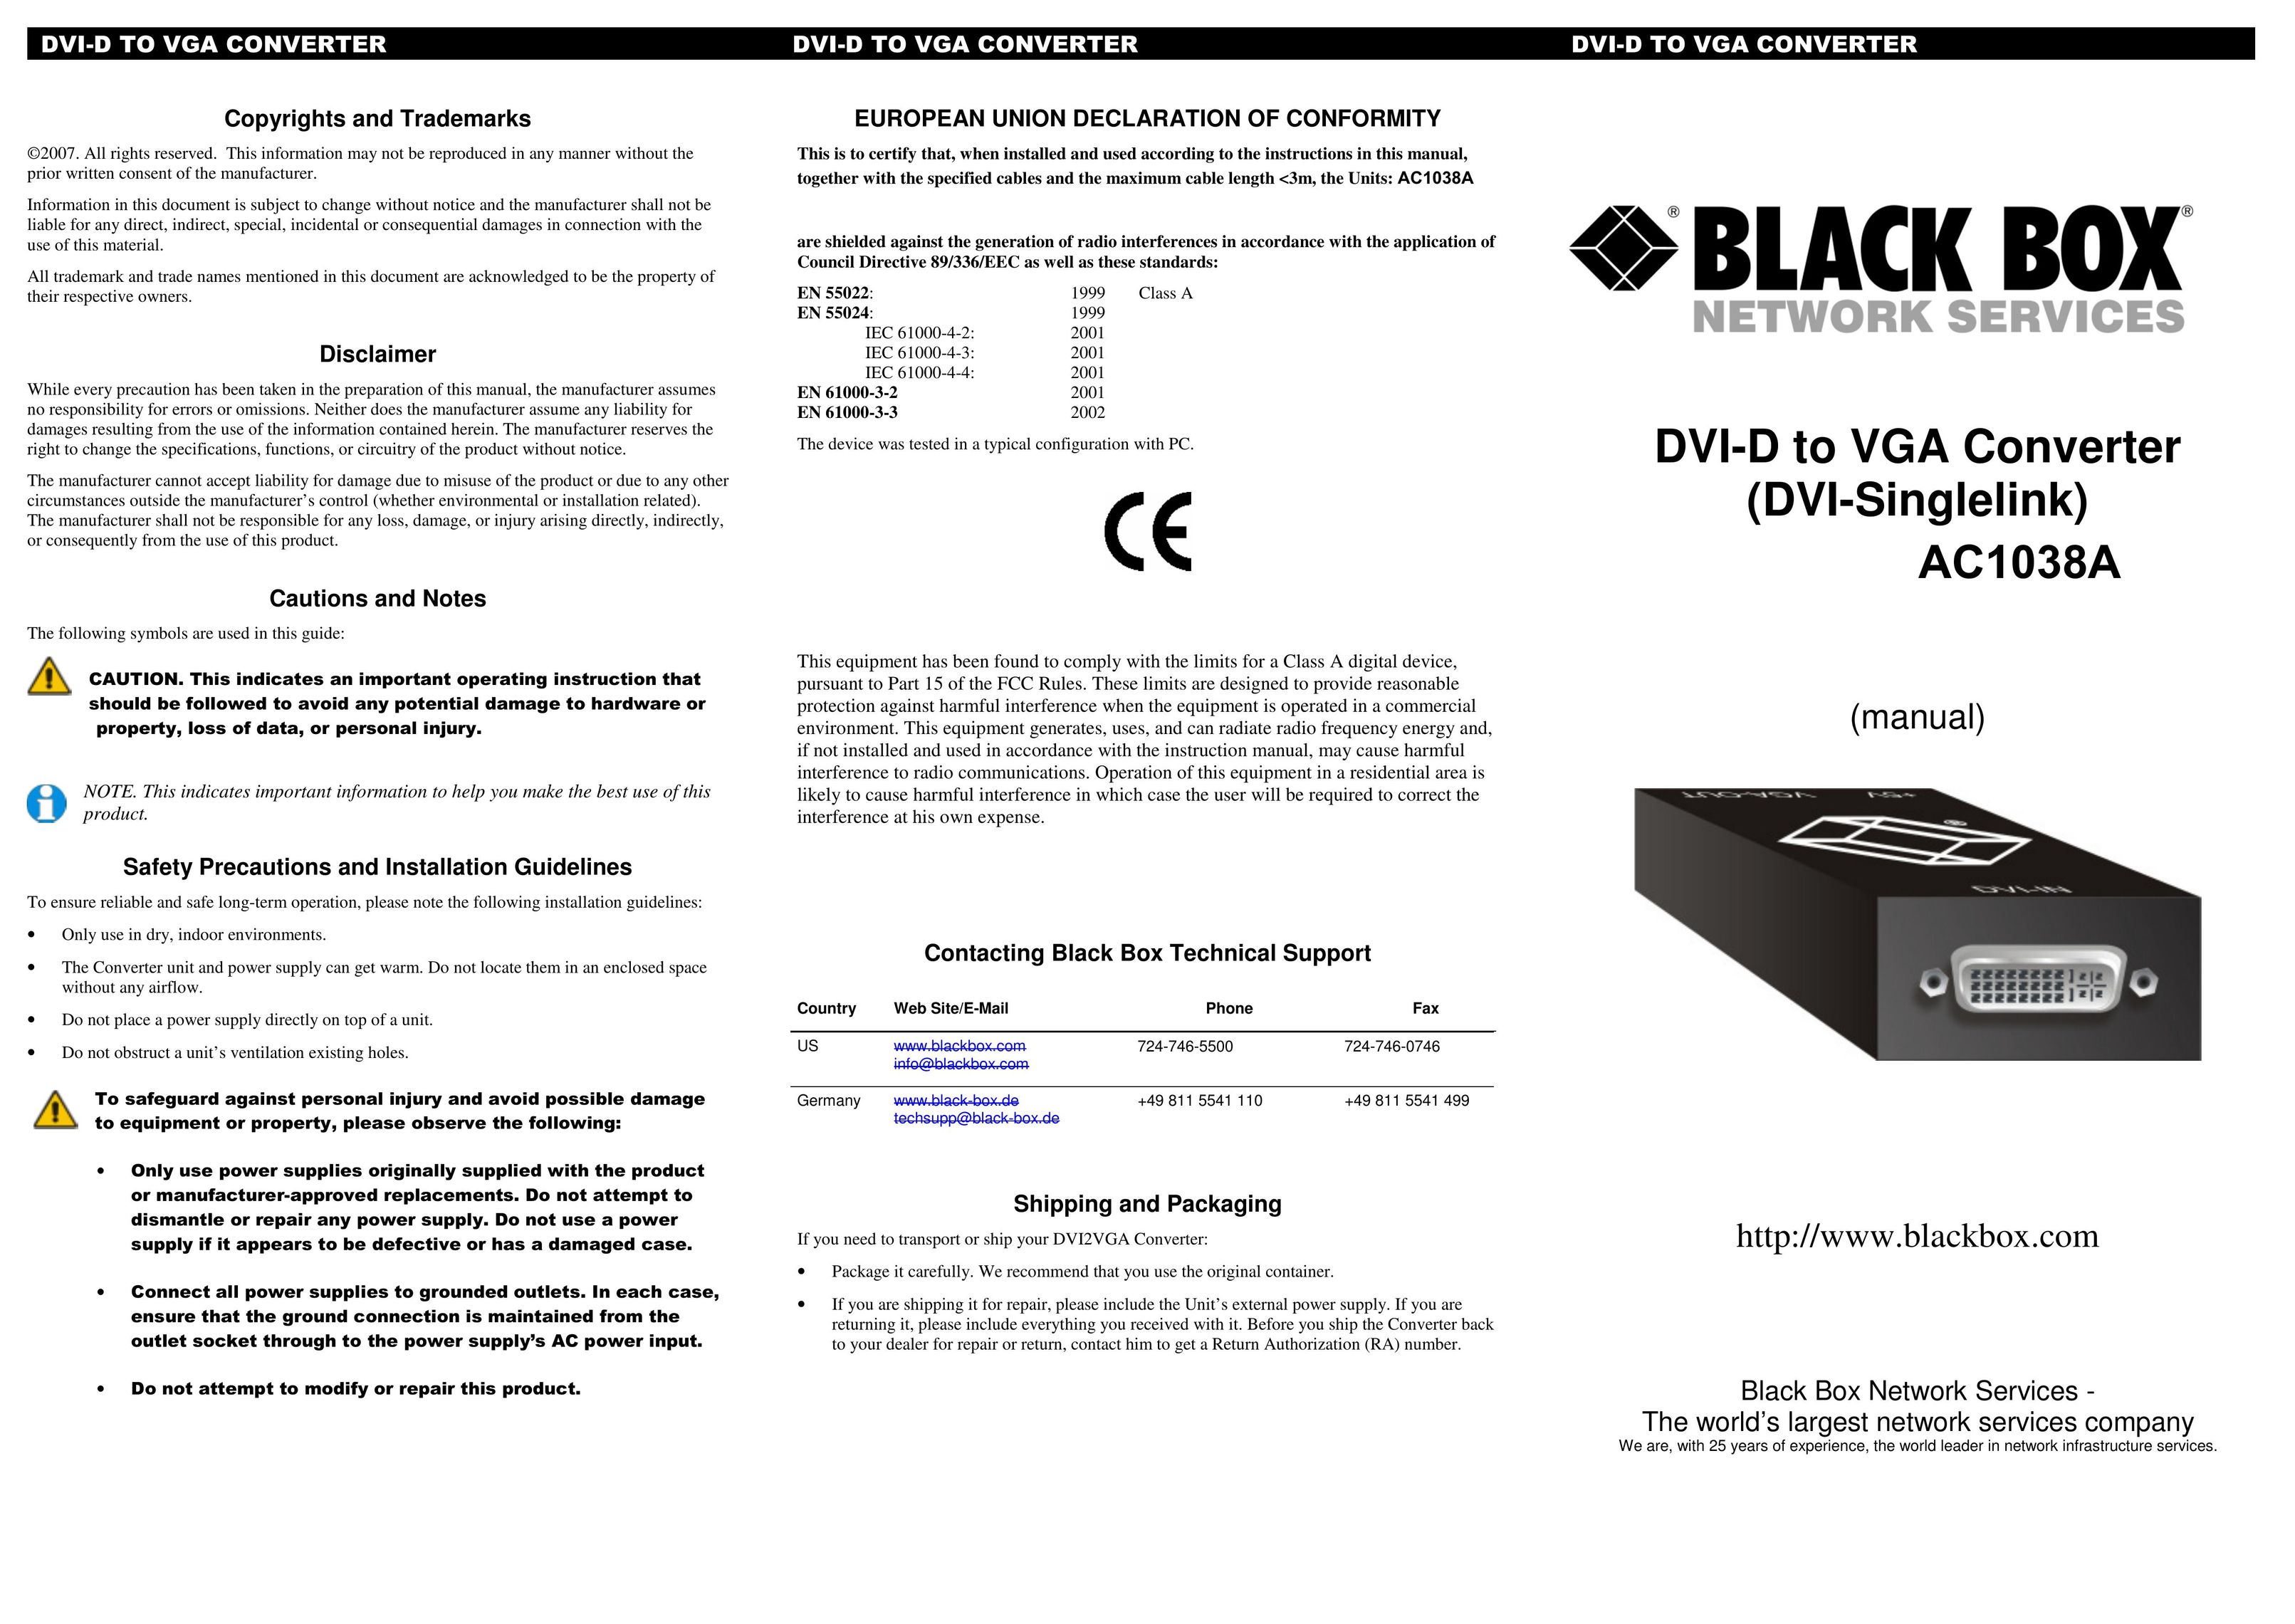 Black Box DVI-D TO VGA CONVERTER TV Converter Box User Manual